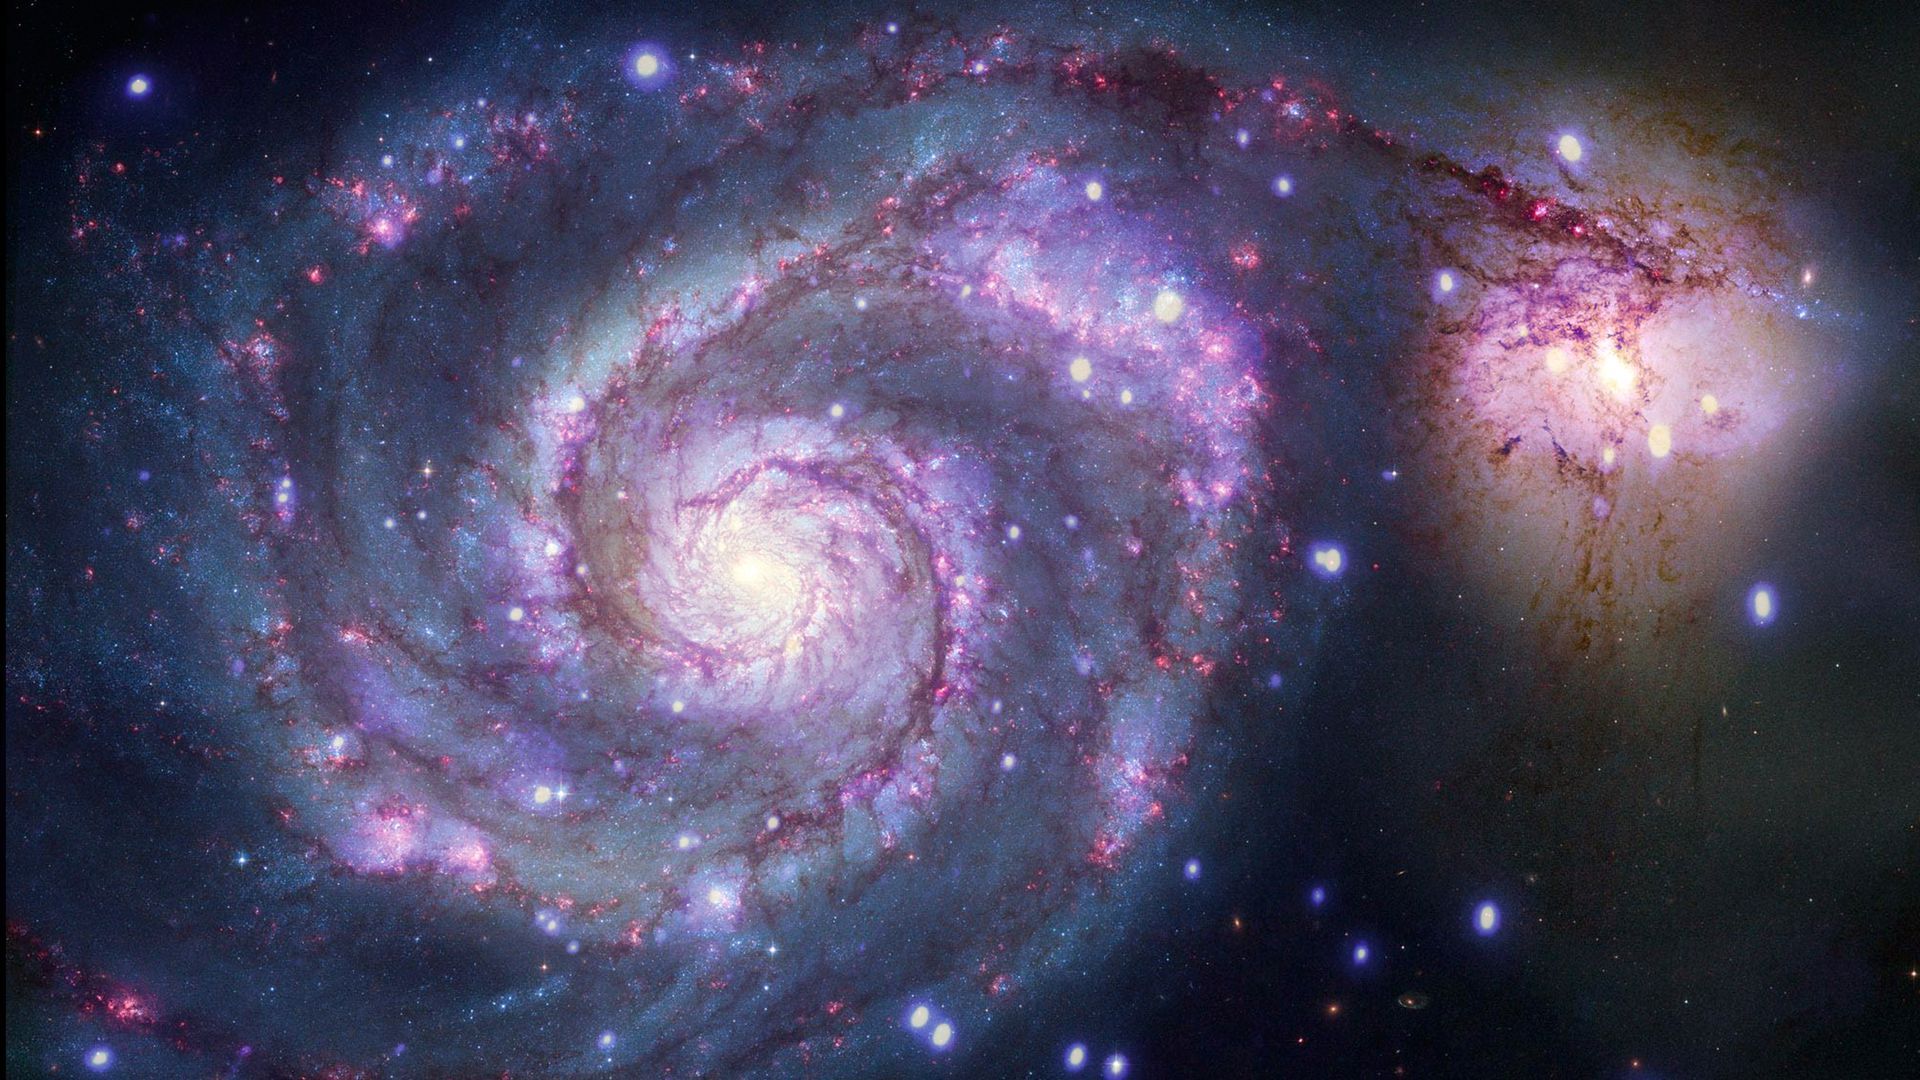 A whirlpool galaxy